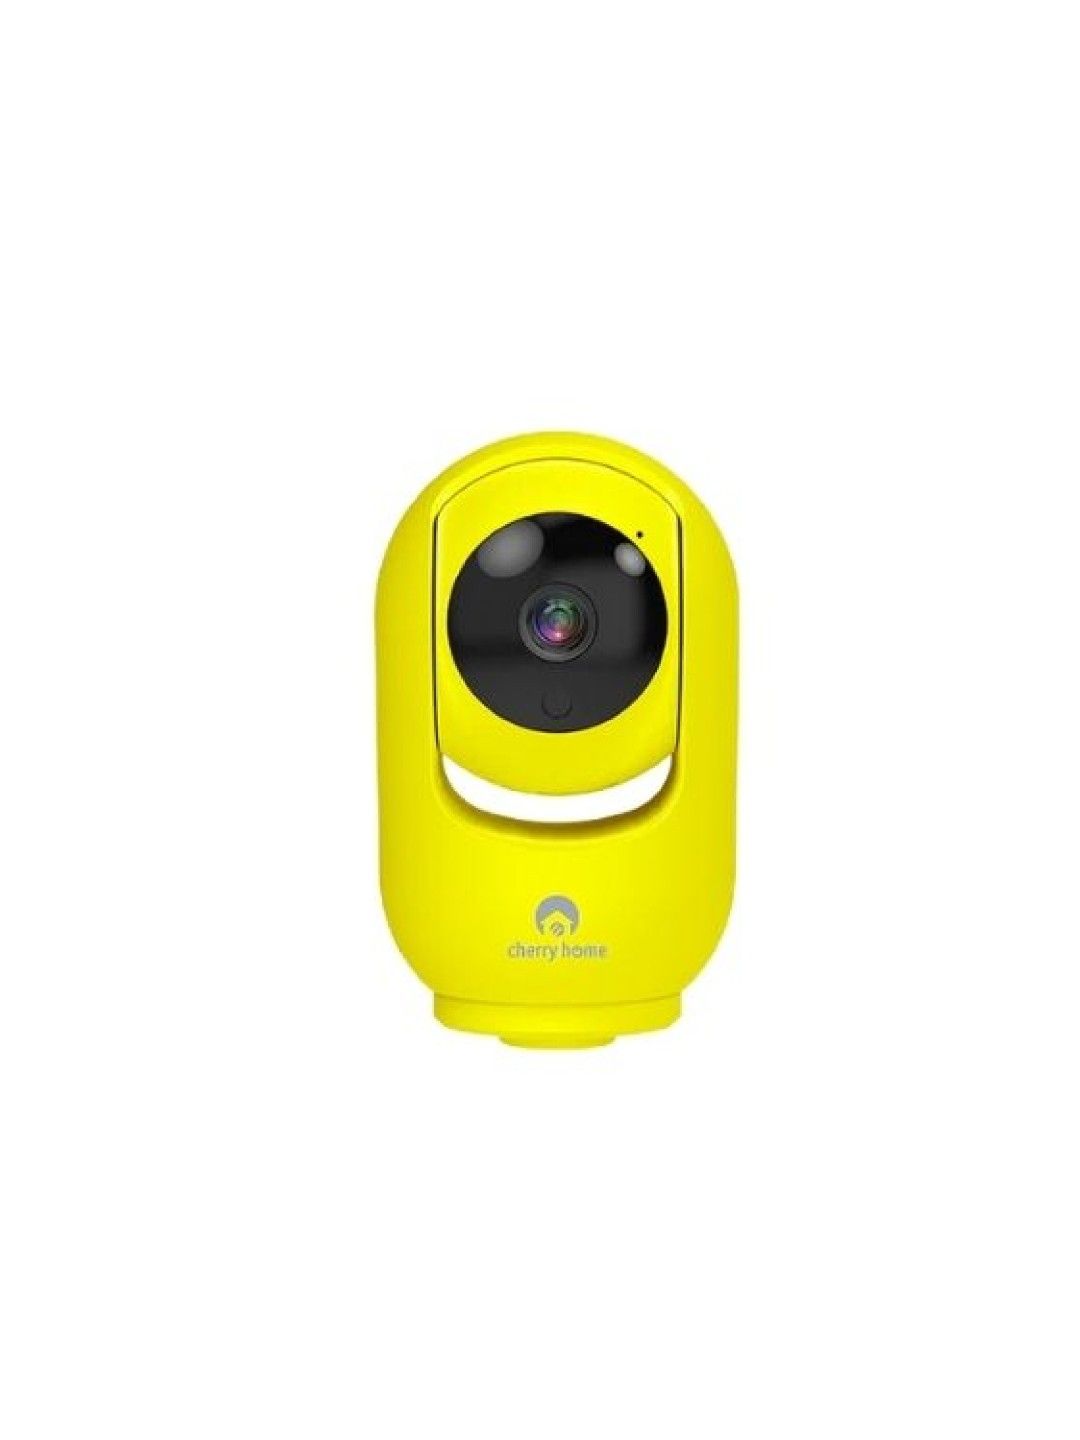 Cherry Smart Swivel S4 Camera (Yellow- Image 1)